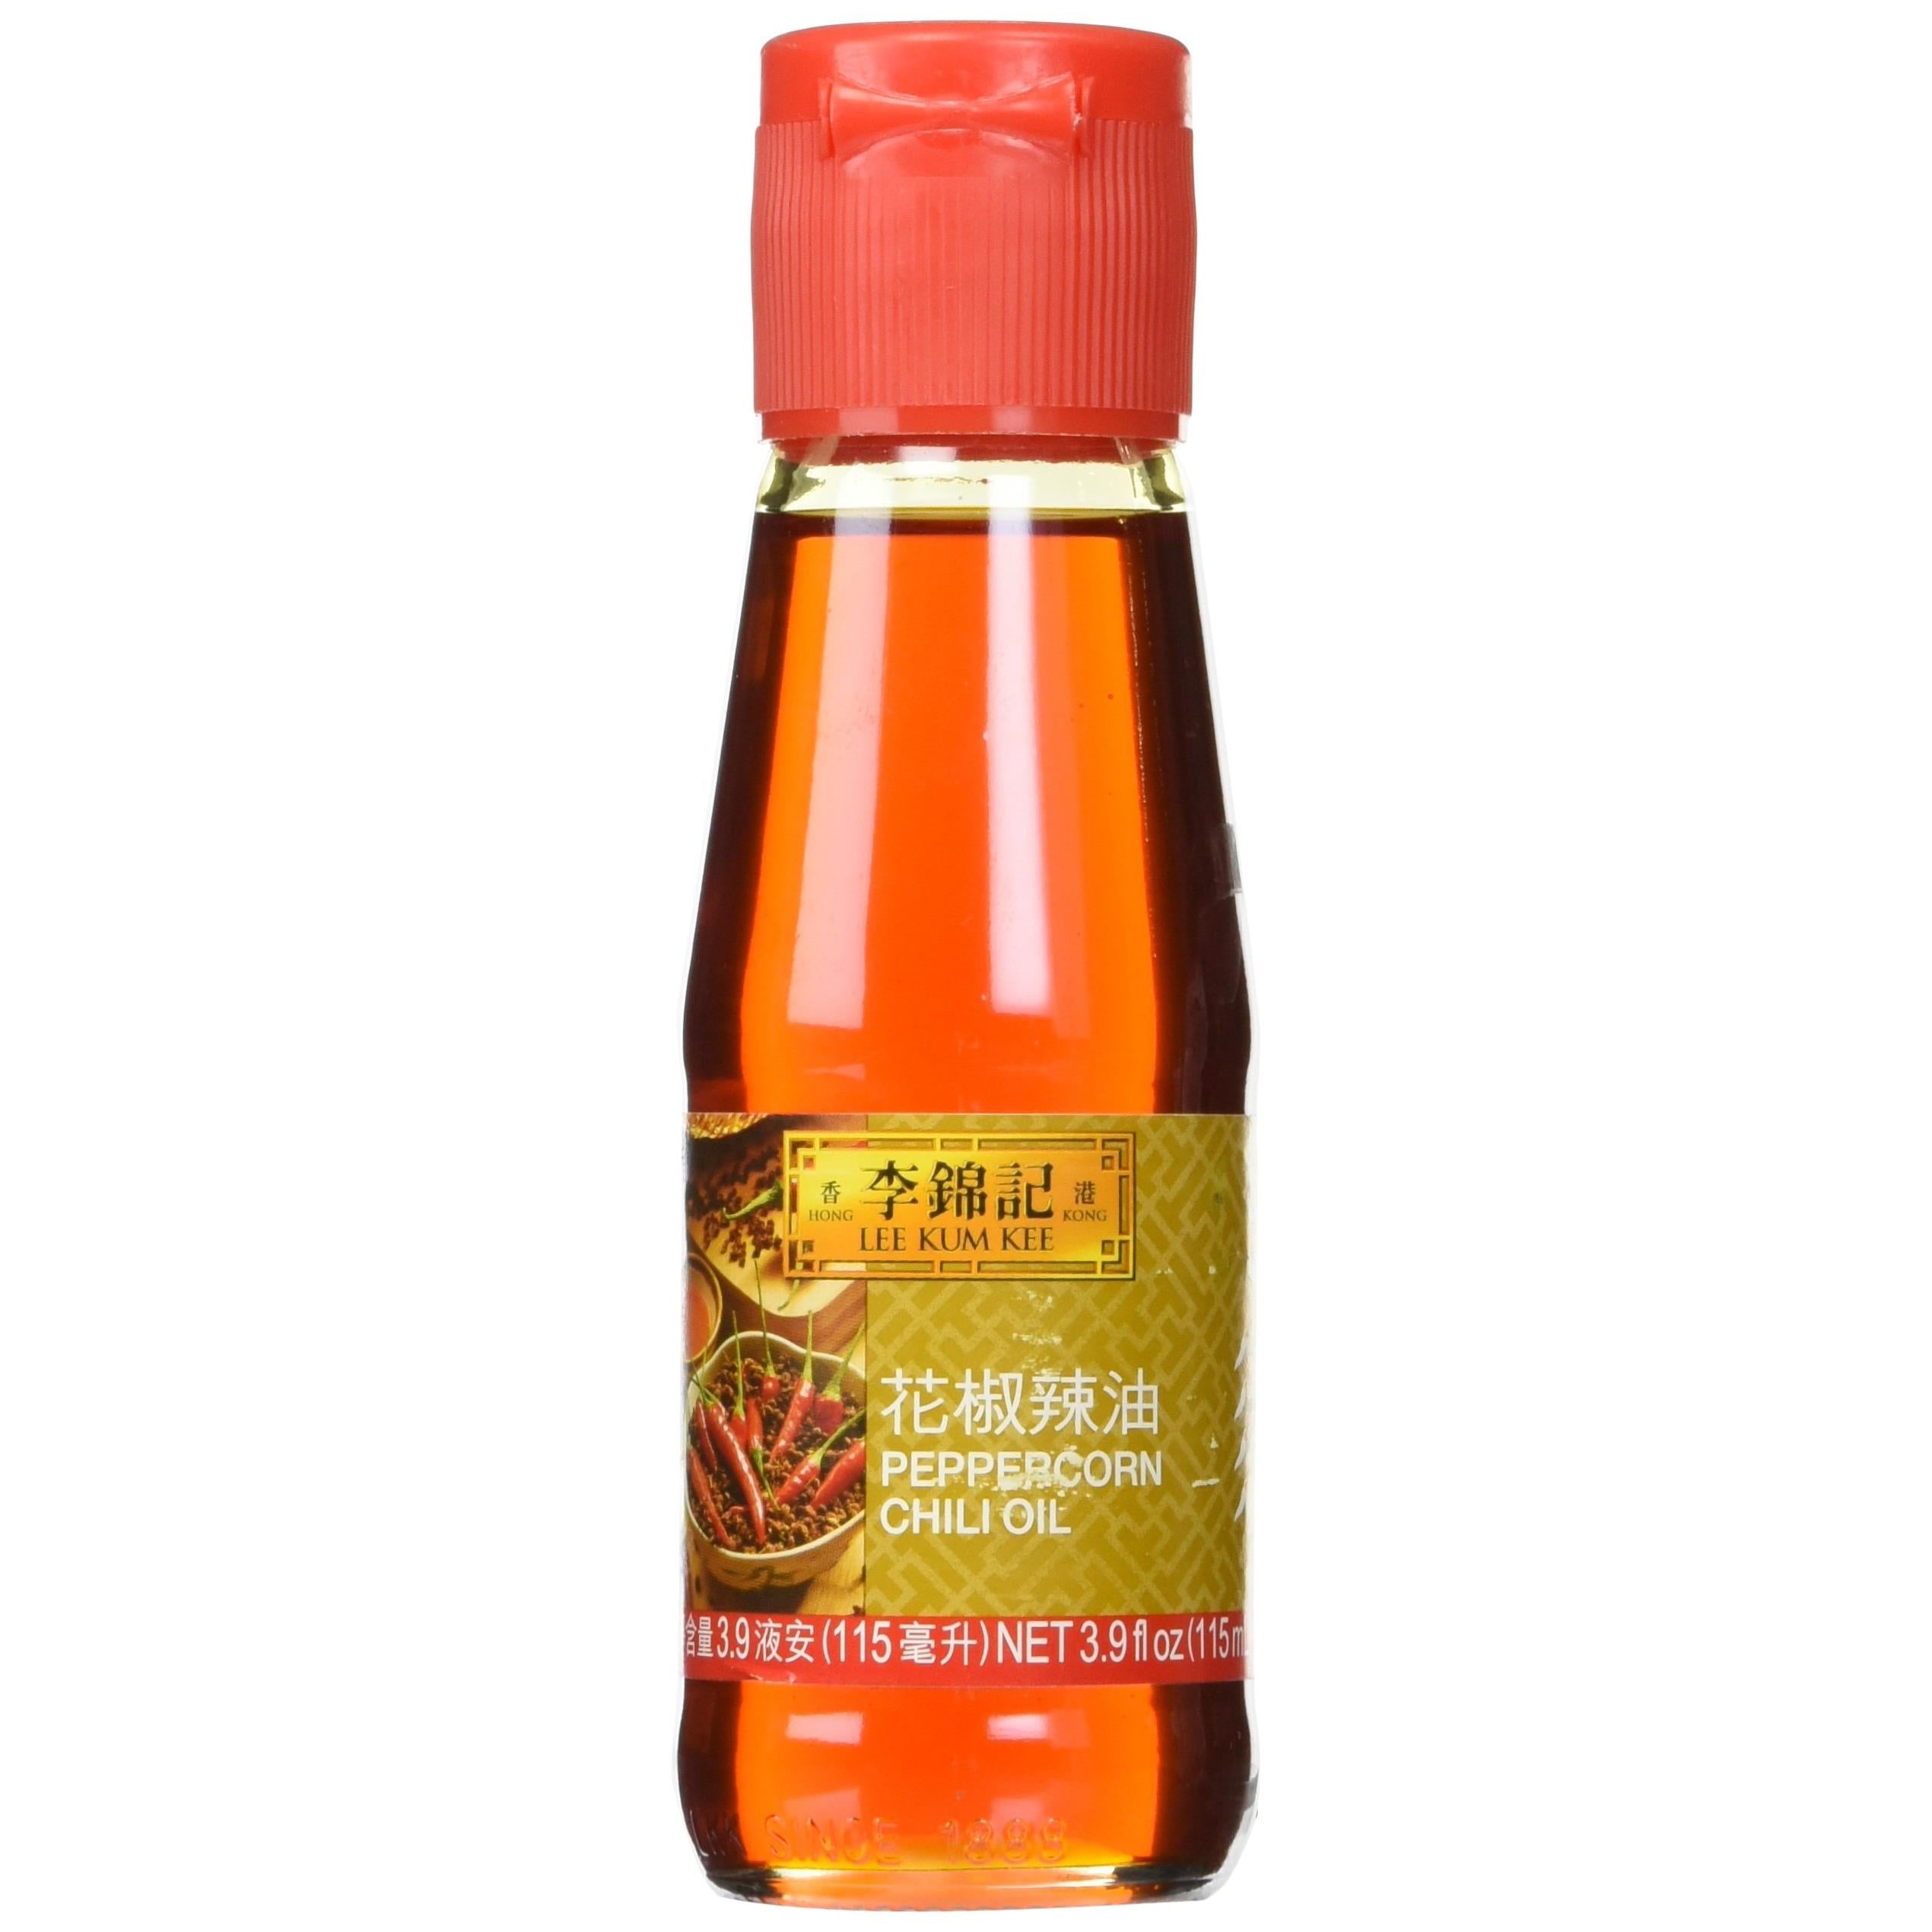 Lee Kum Kee Brand Peppercorn Chili Oil in 3.9fl oz (115ml) bottle